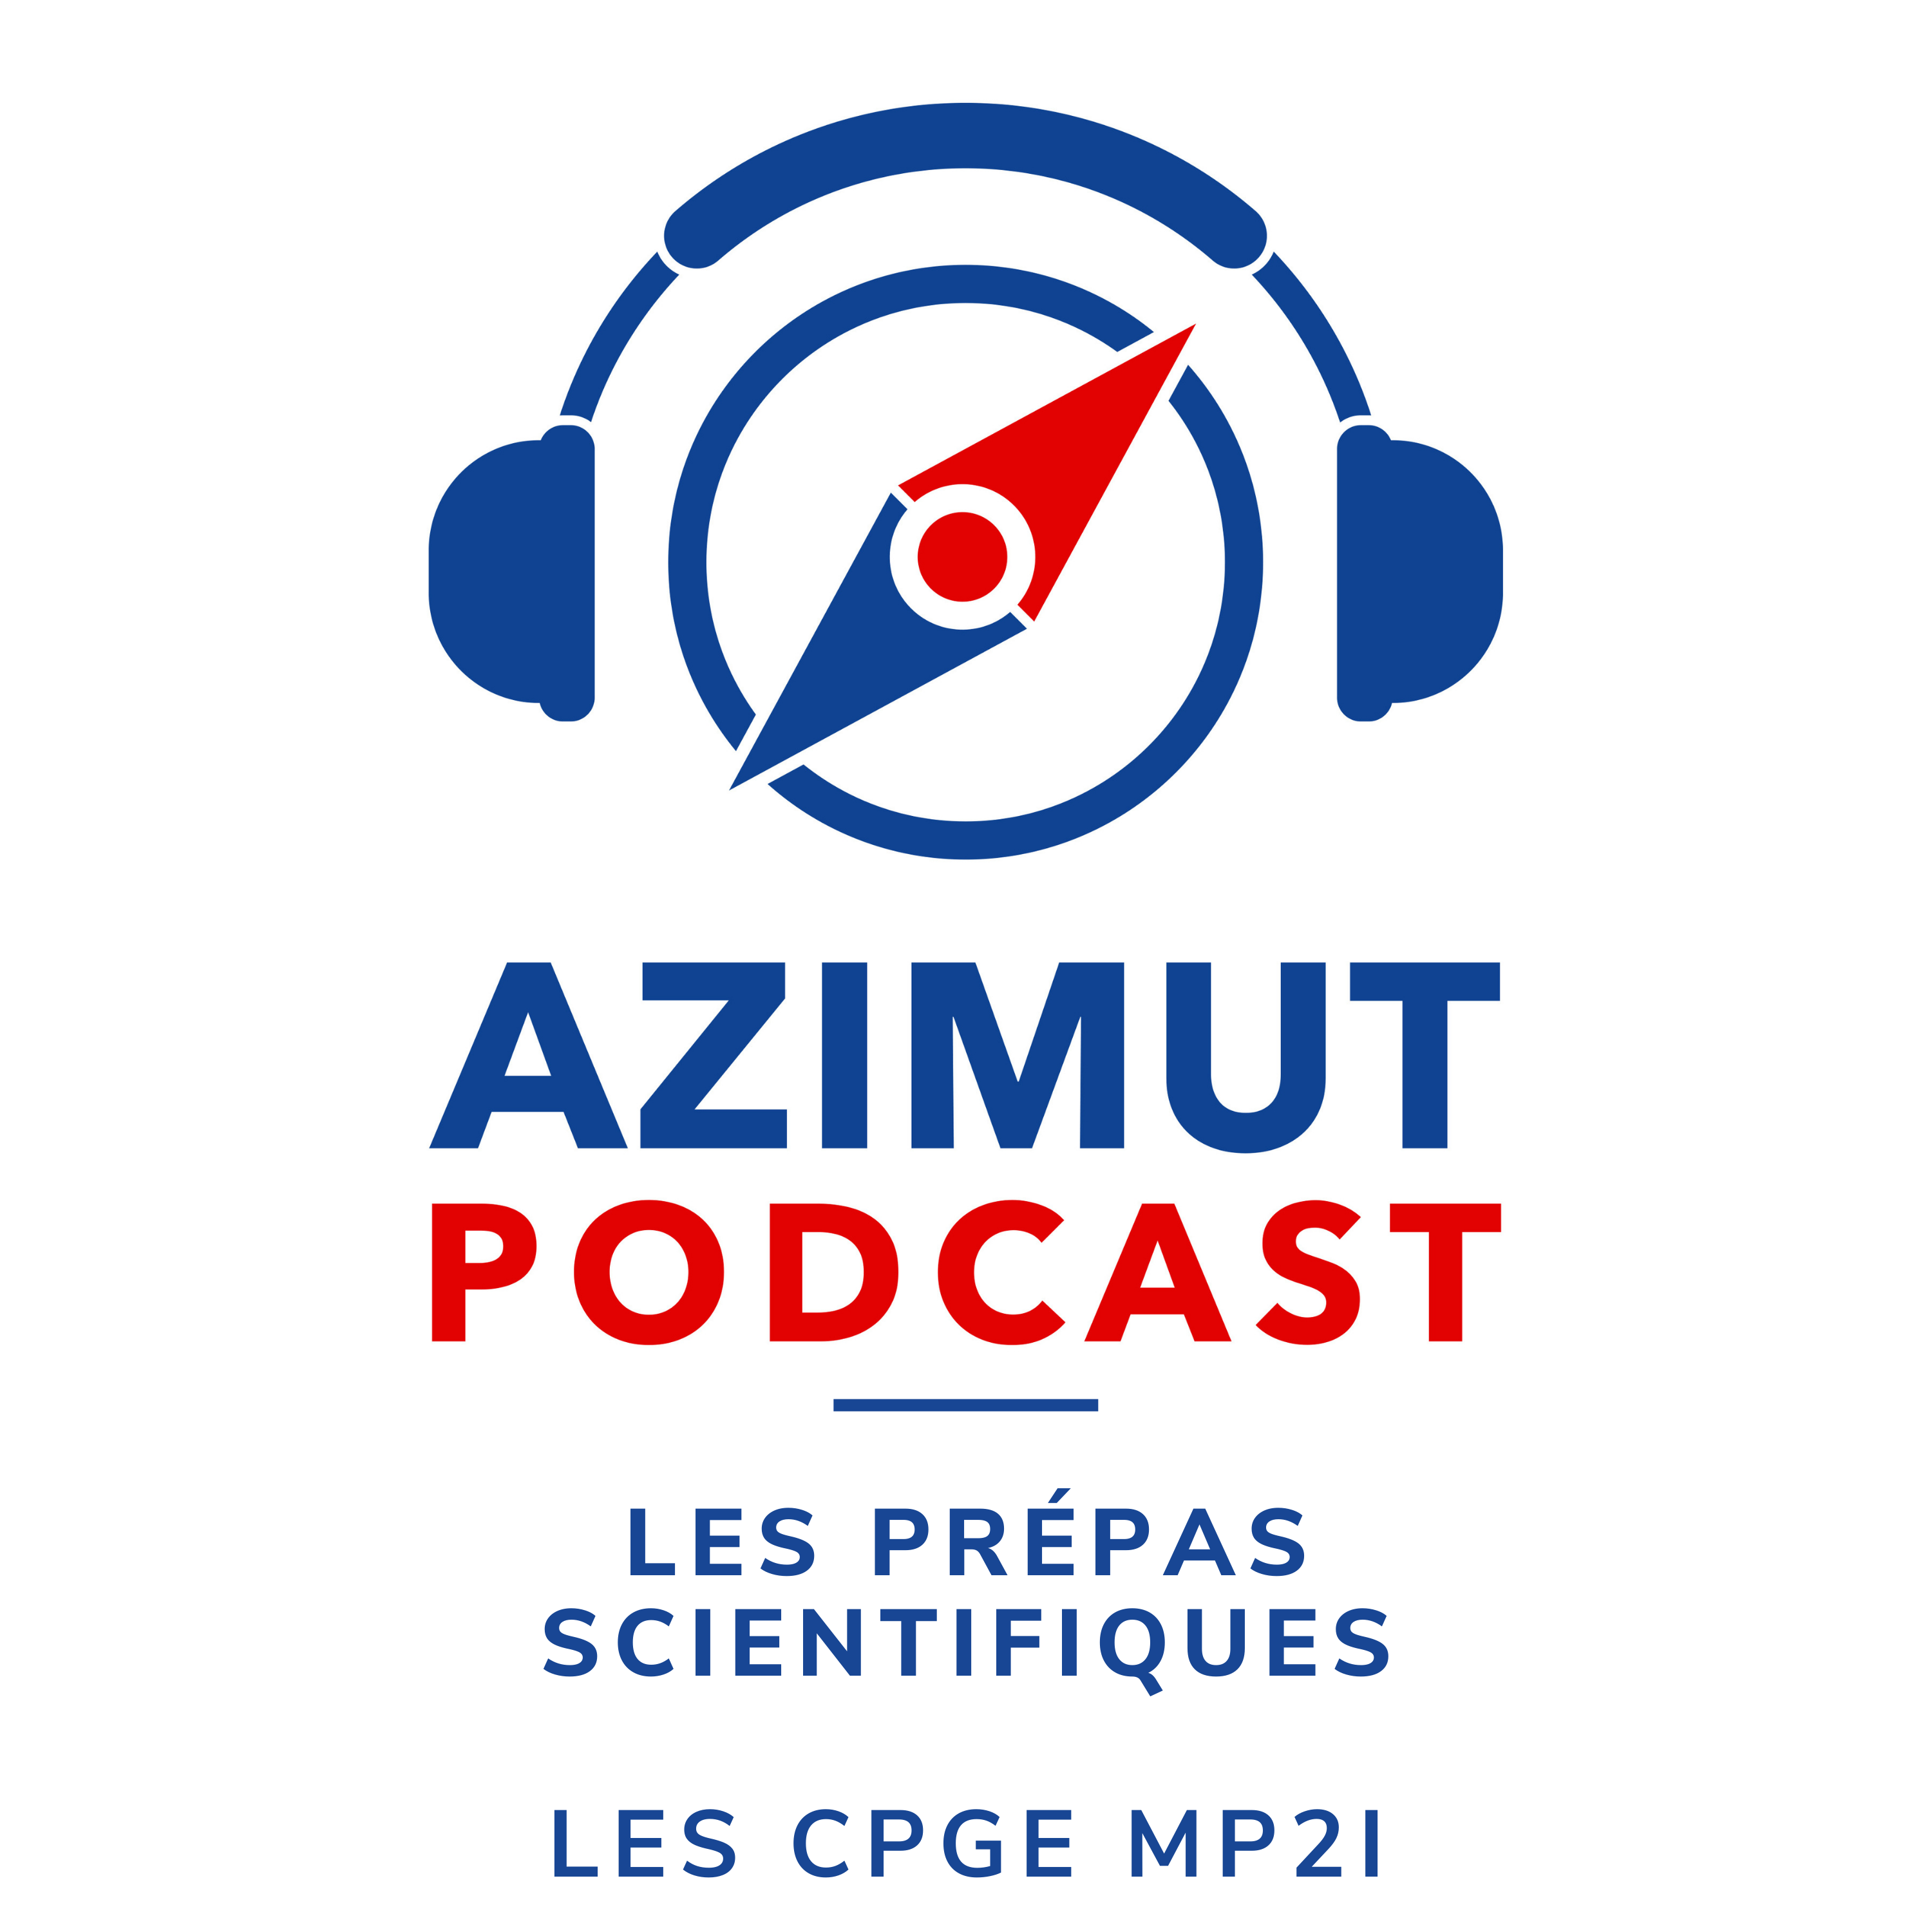 Les CPGE MP2I | LES PRÉPAS SCIENTIFIQUES